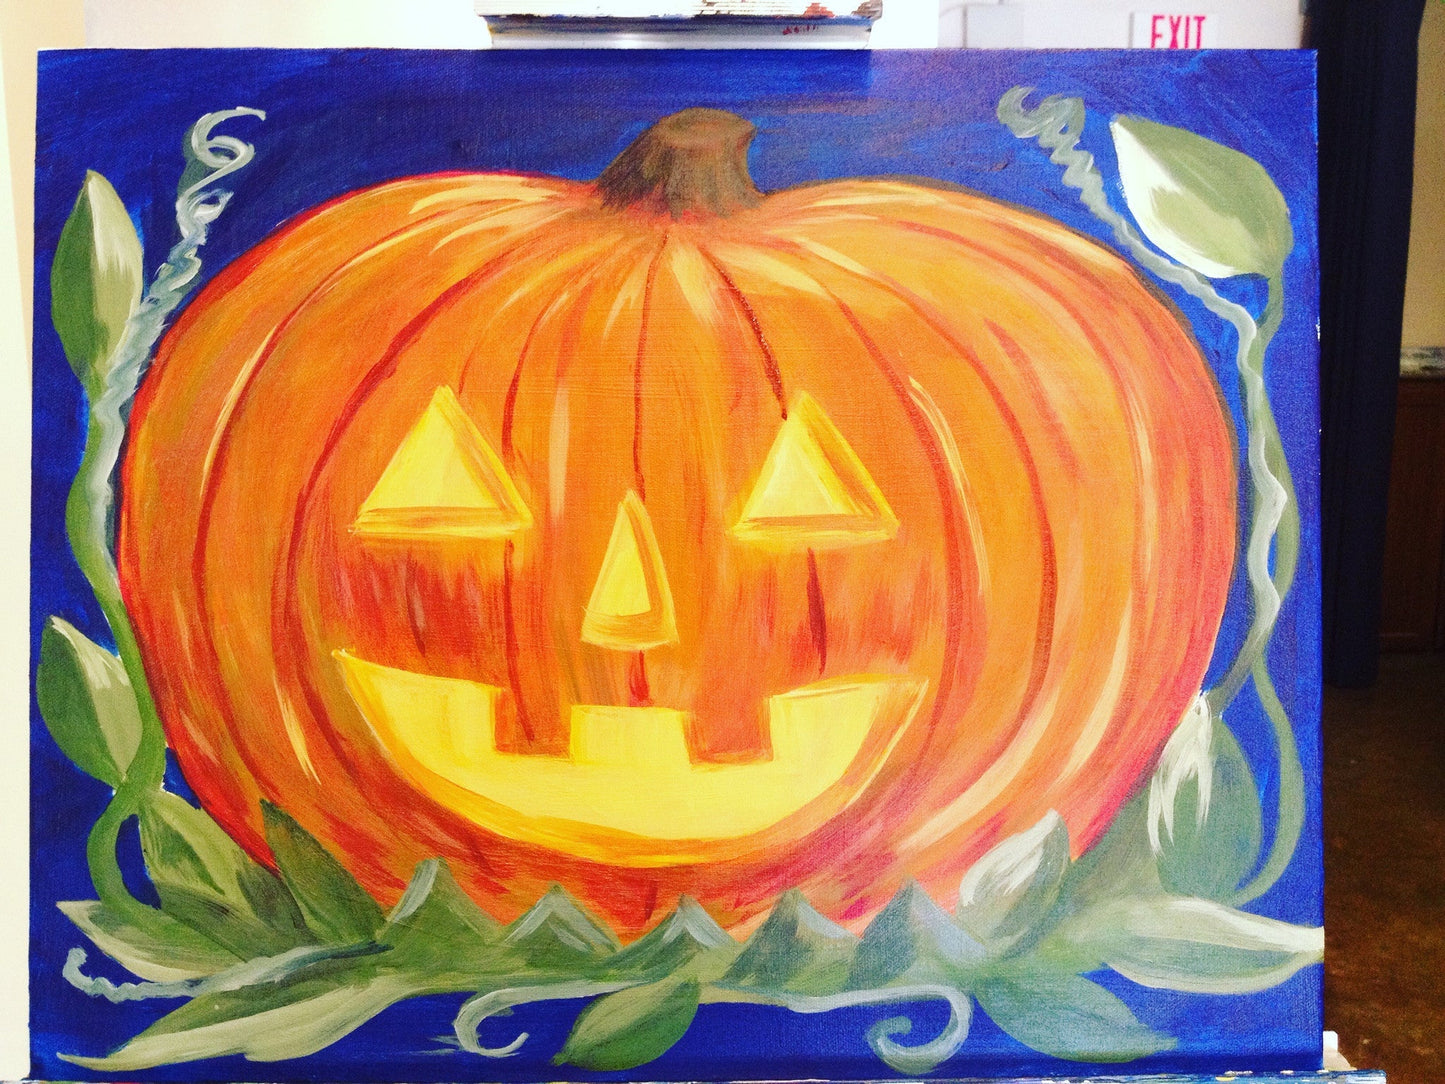 Thu, Oct 20th, 4-6P Kids Paint: “Pastel Pumpkins” Houston Public Kids Painting Class